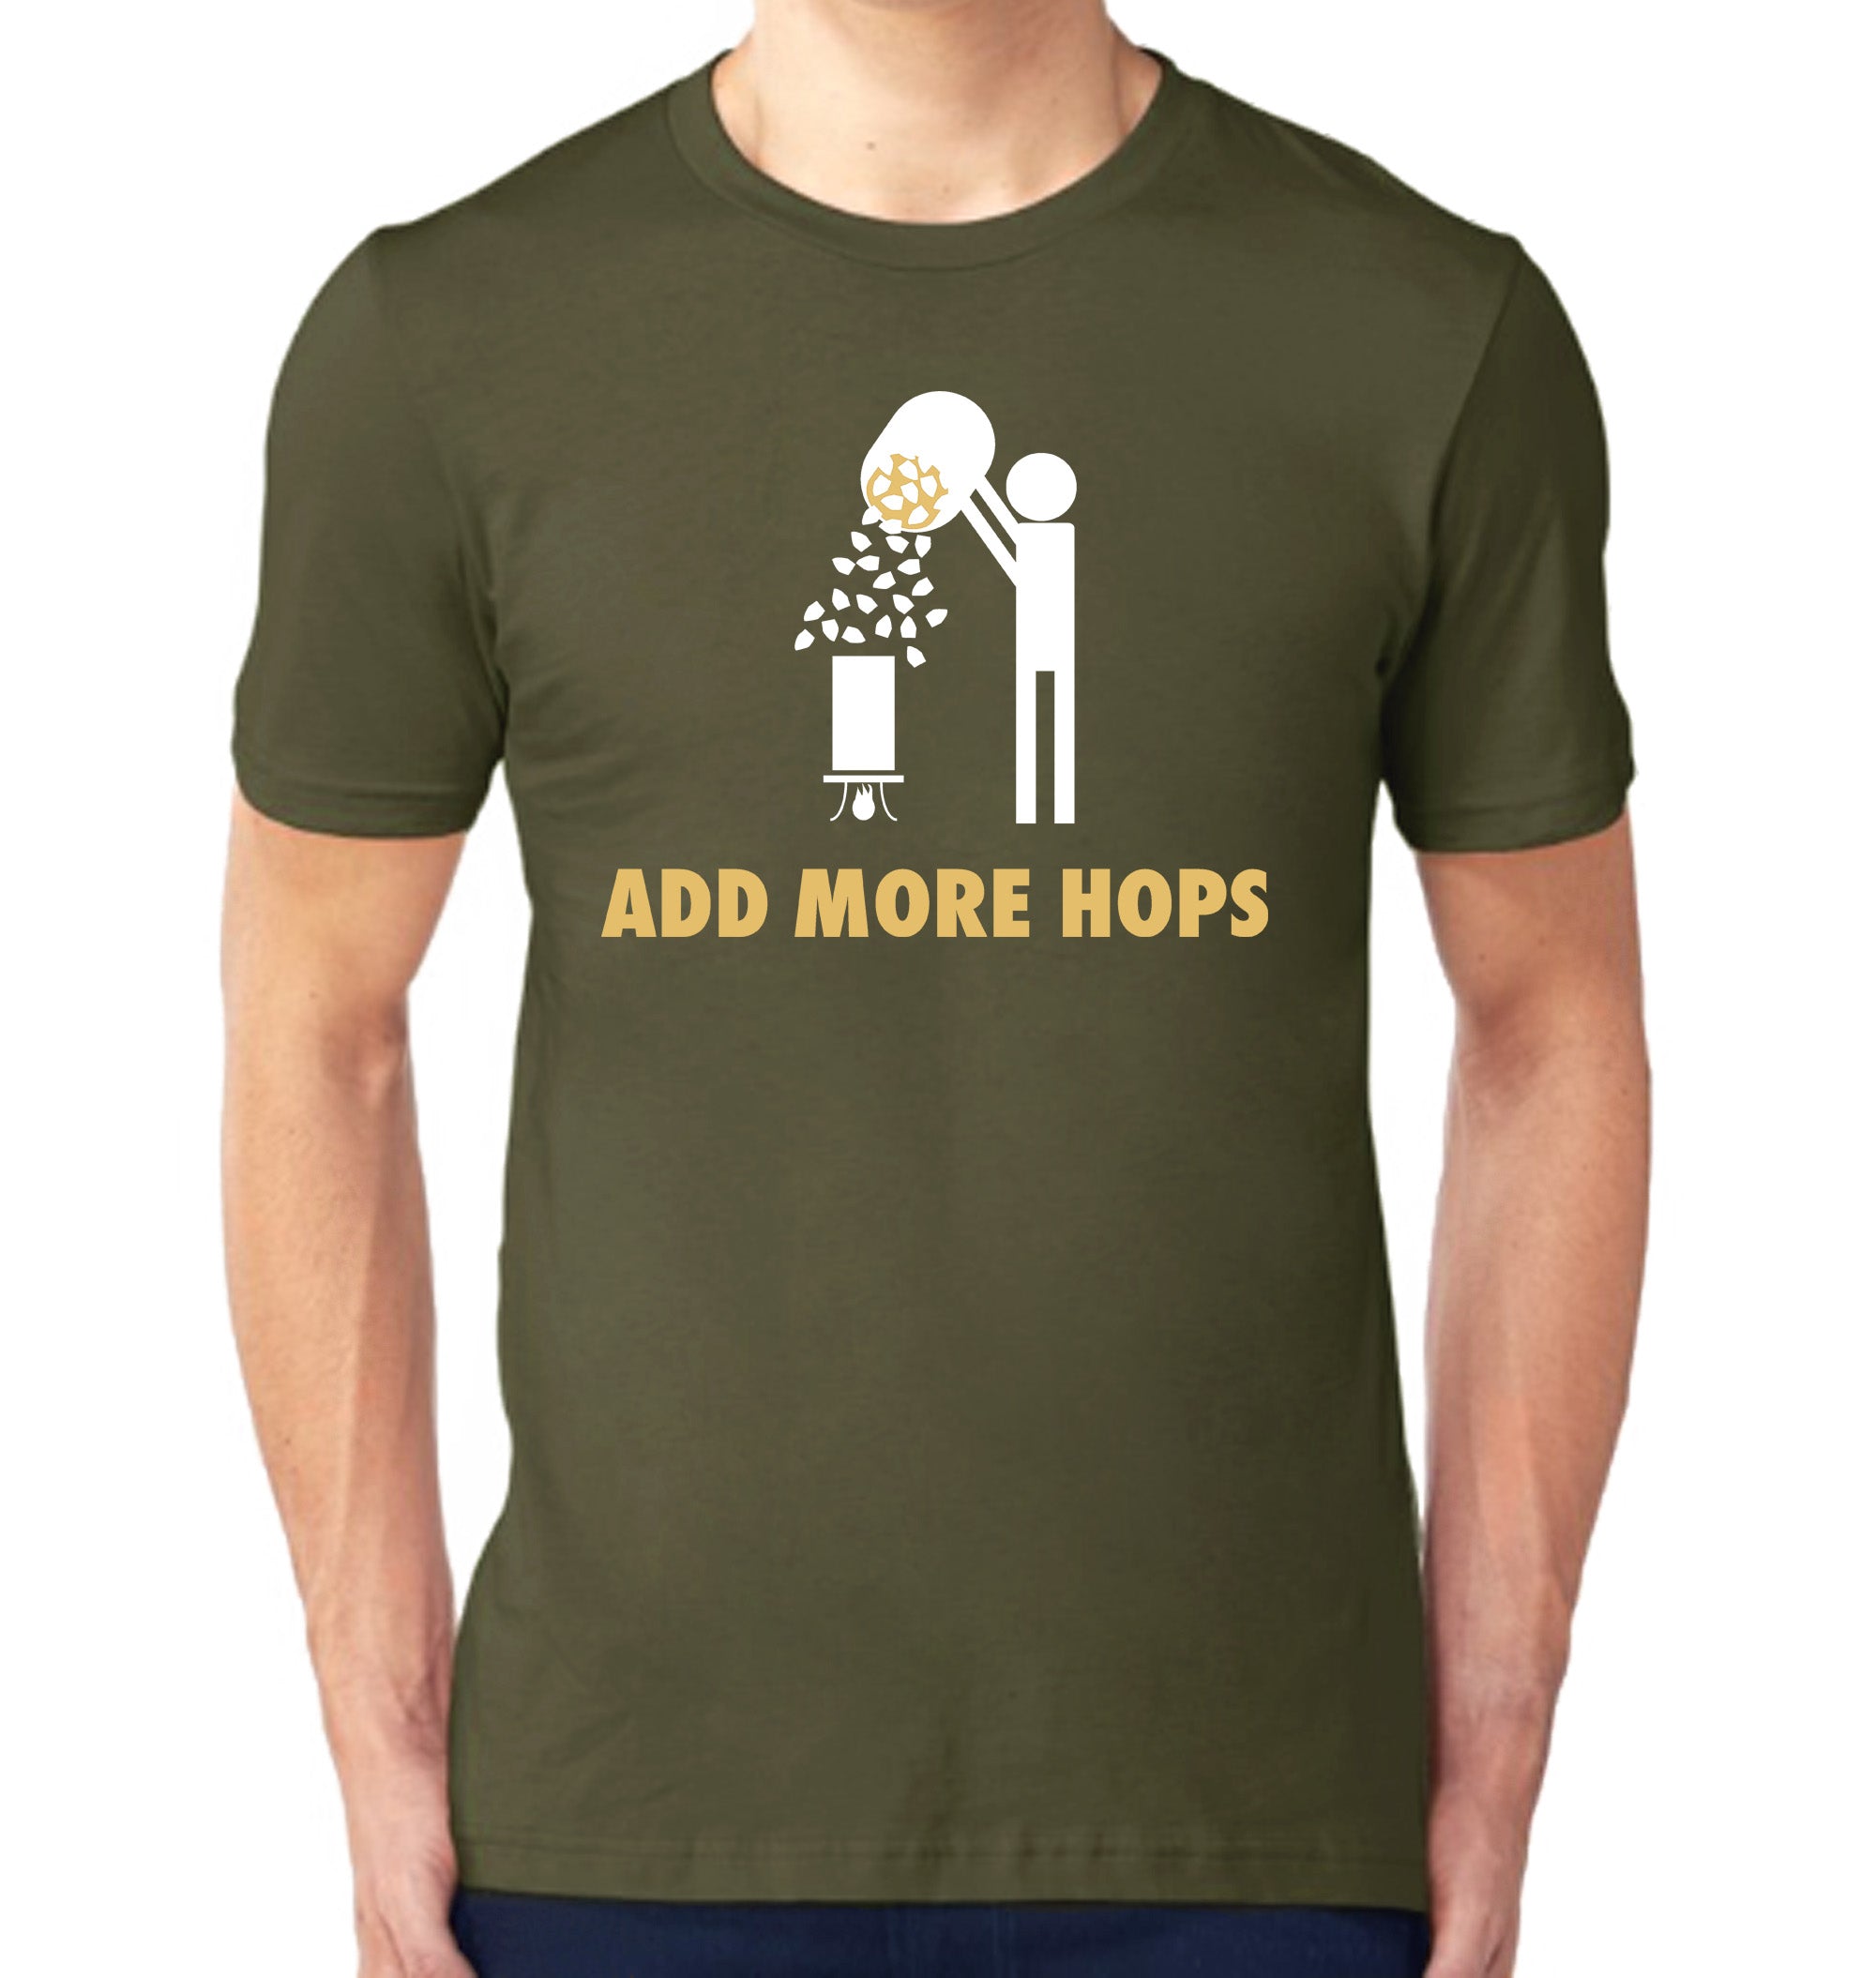 add-more-hops-tshirt-model_2000x.jpg